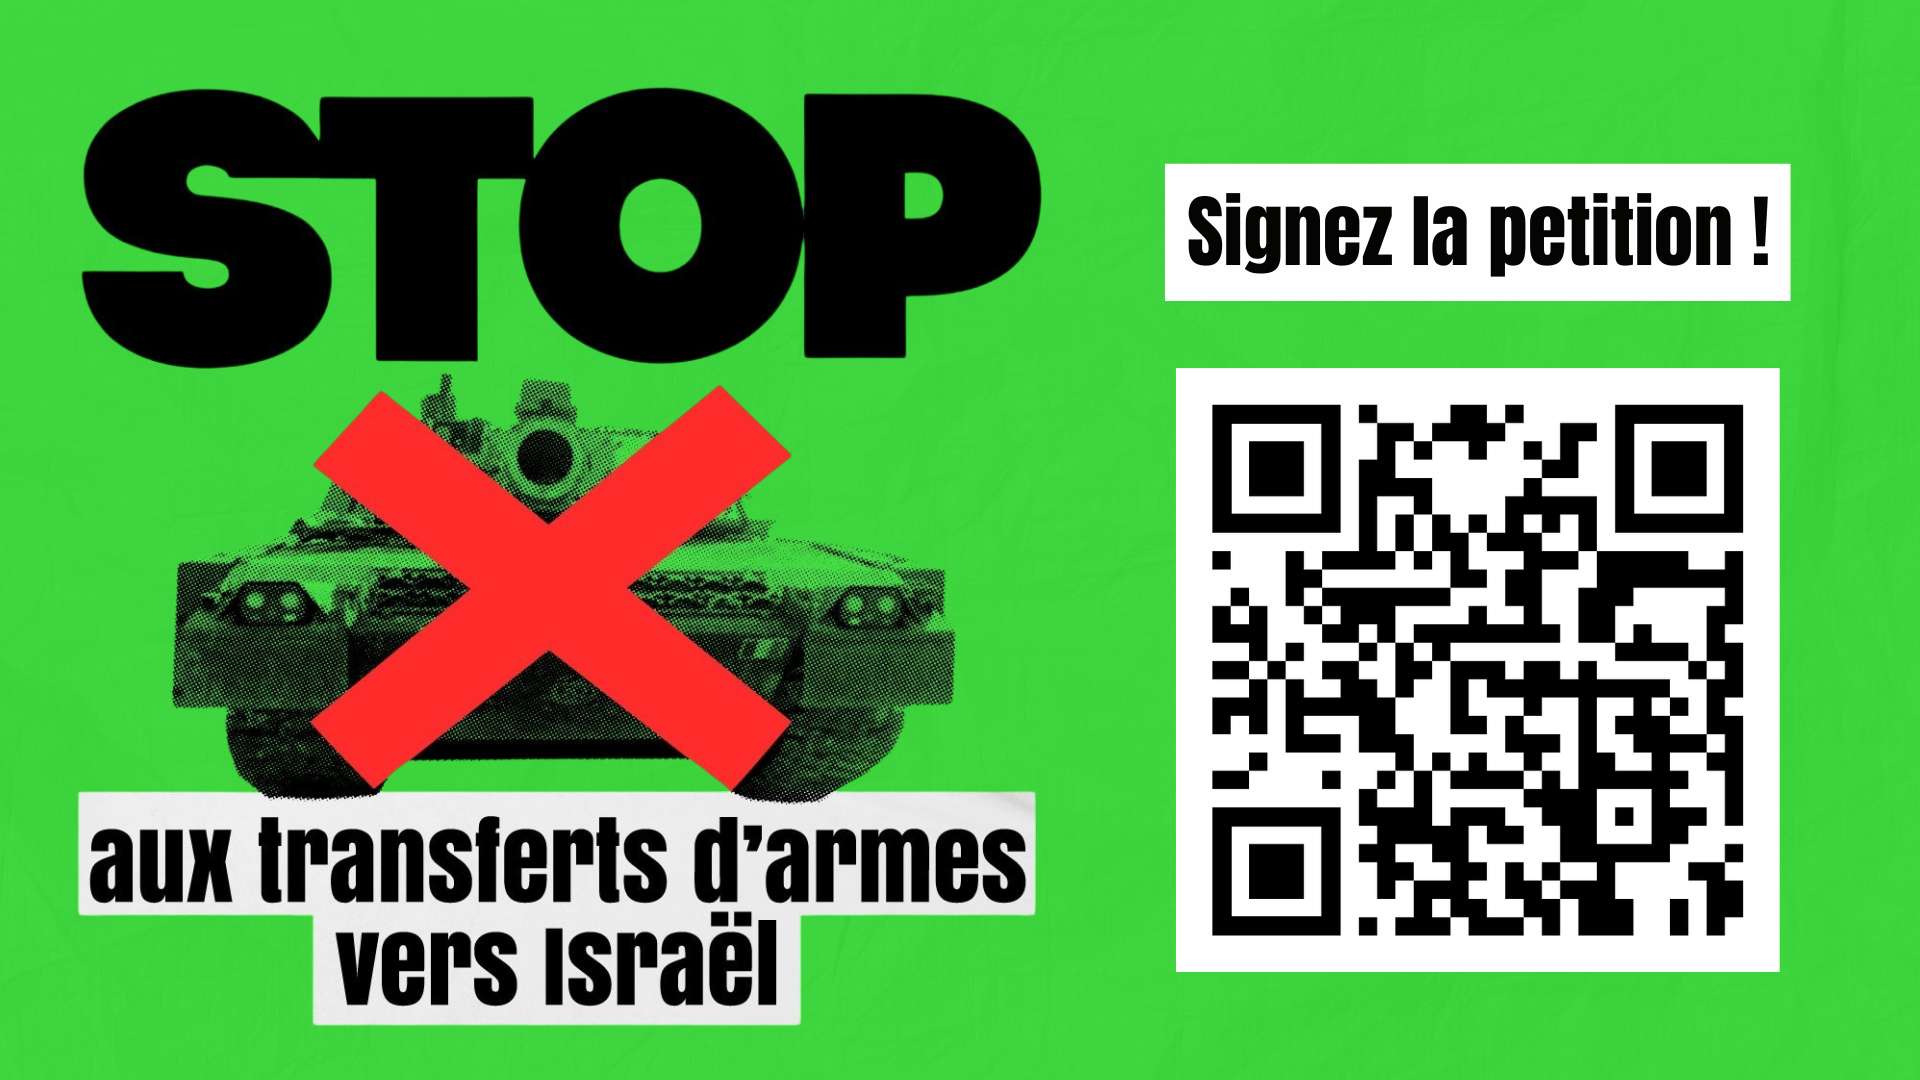 Stop de wapenhandel met Israël! Militair embargo, NU!